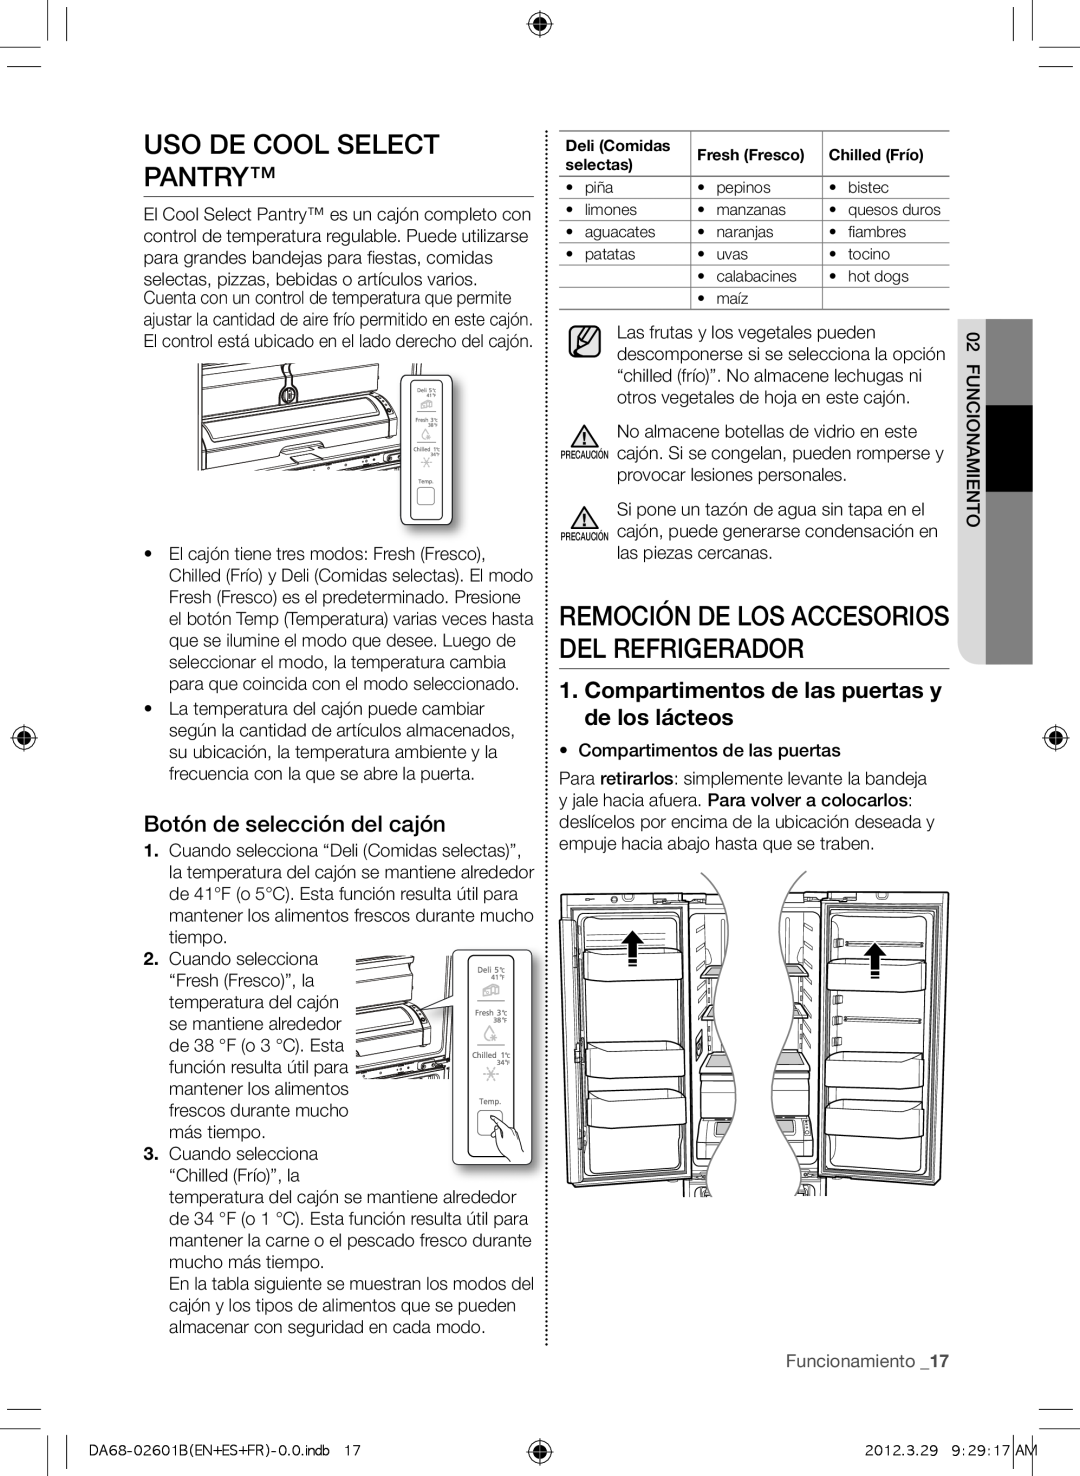 Samsung RF261BEAEBC Uso de Cool Select Pantry, Remoción de los accesorios del refrigerador, Botón de selección del cajón 